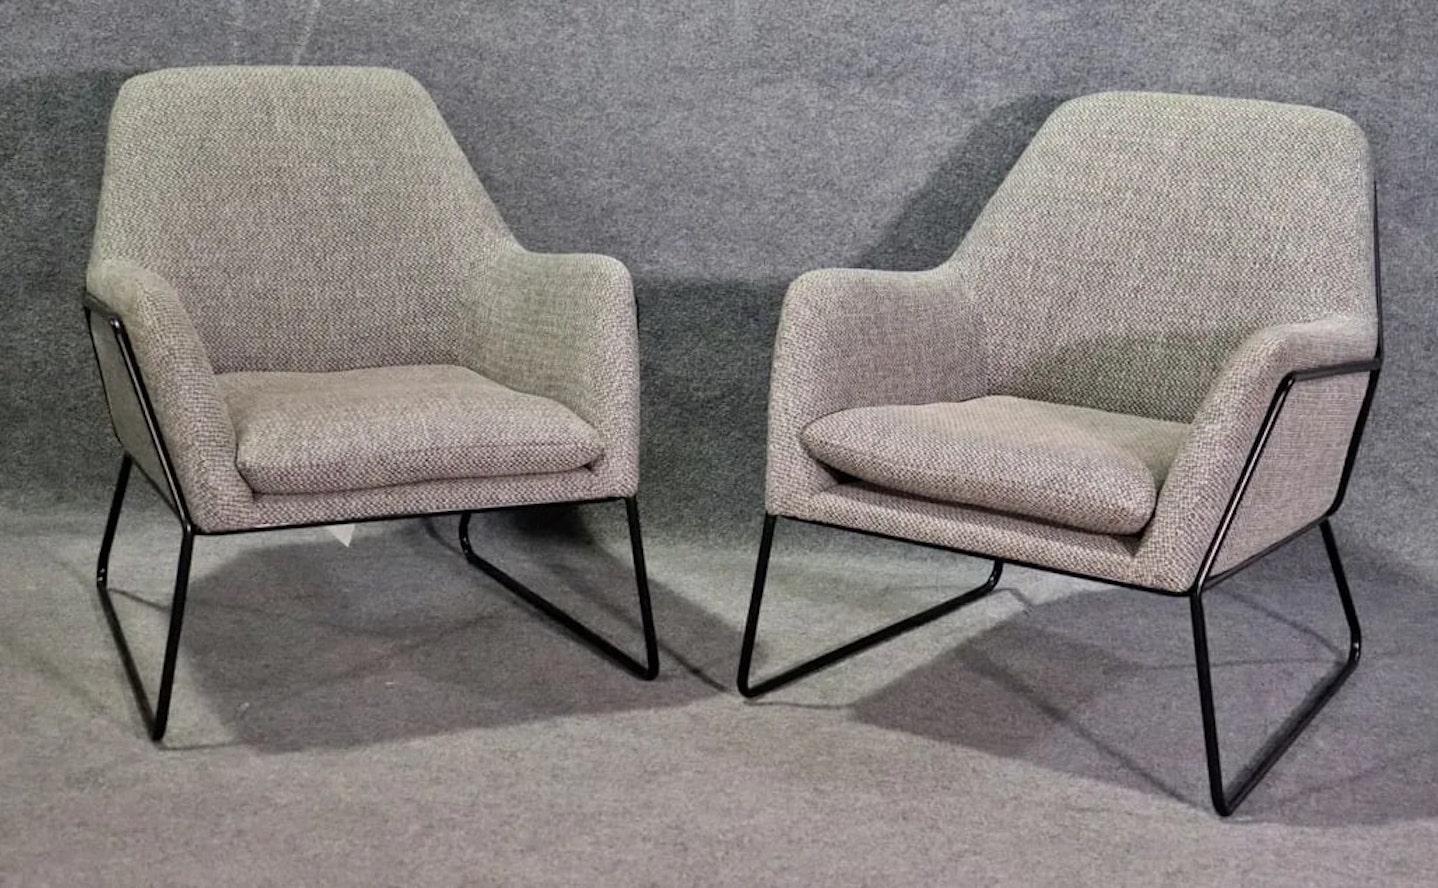 Paire de chaises de salon modernes par Article avec des cadres solides en fer noir et un corps doux.
Veuillez confirmer le lieu NY ou NJ